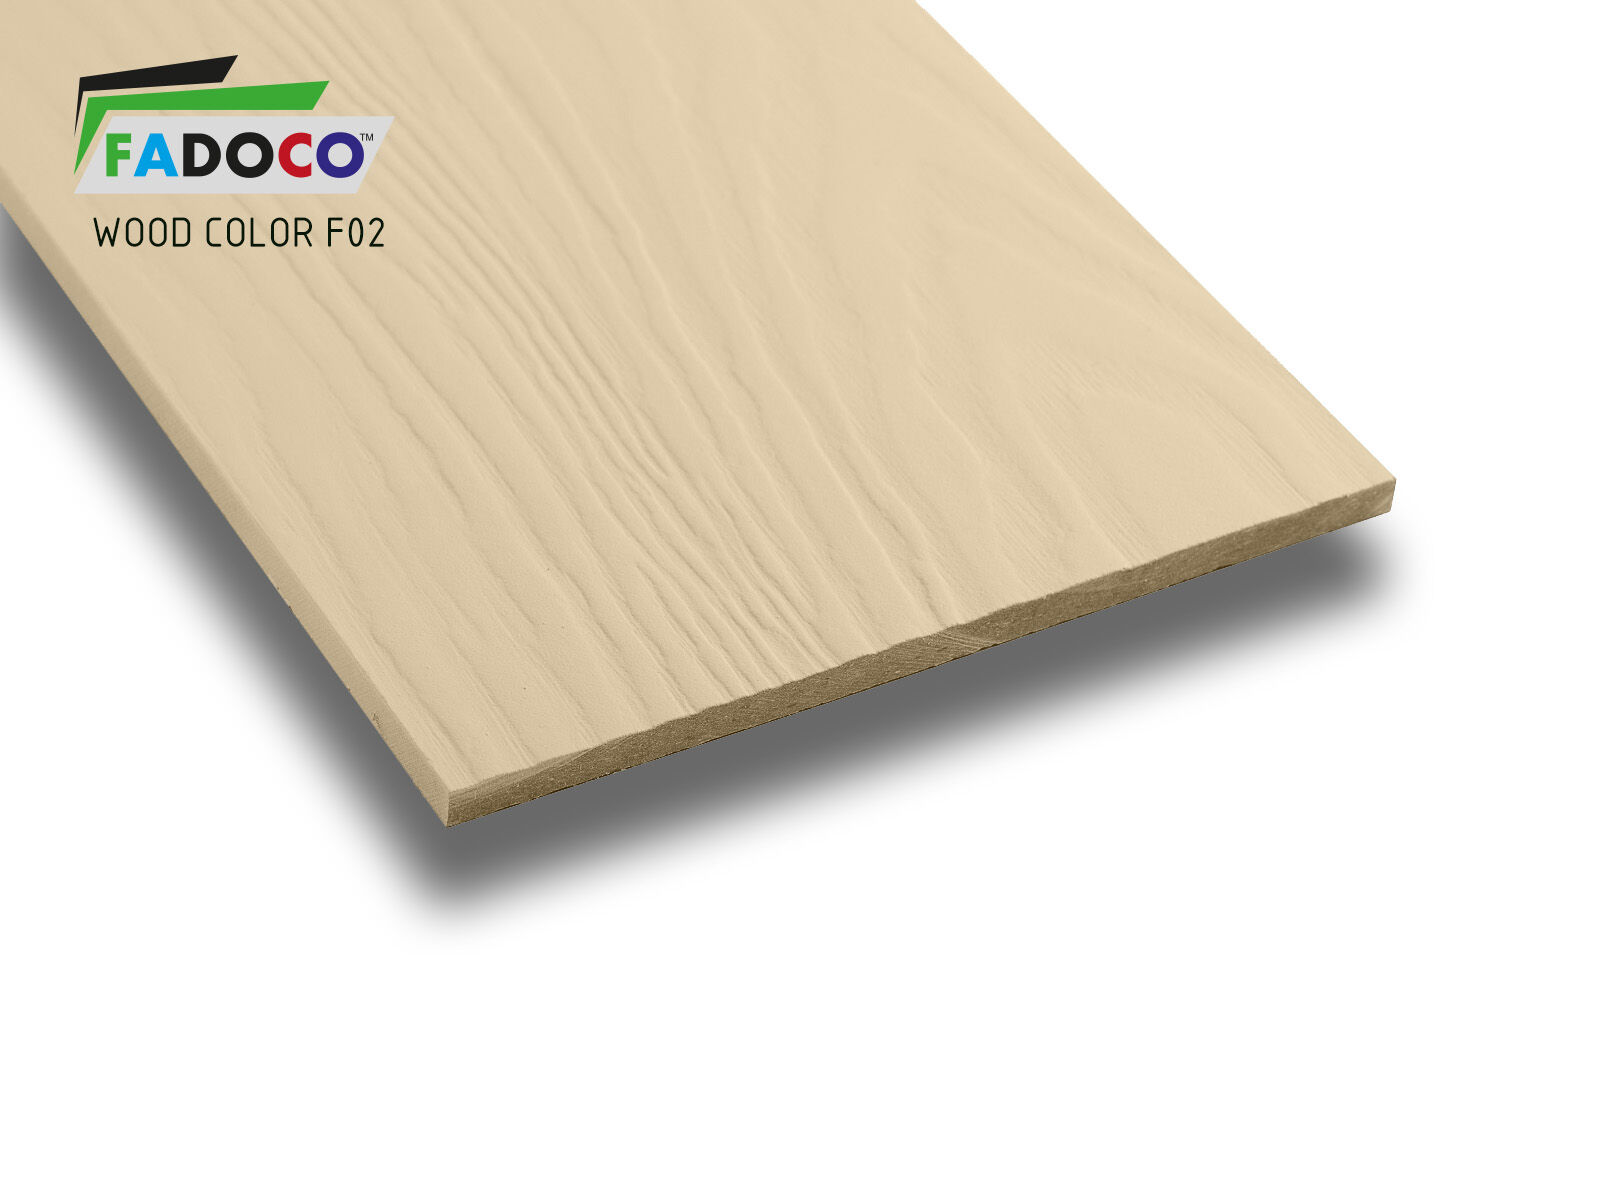 Фибросайдинг FADOCO™ WOOD COLOR 3000x300x8 мм (F02 светлая слоновая кость)